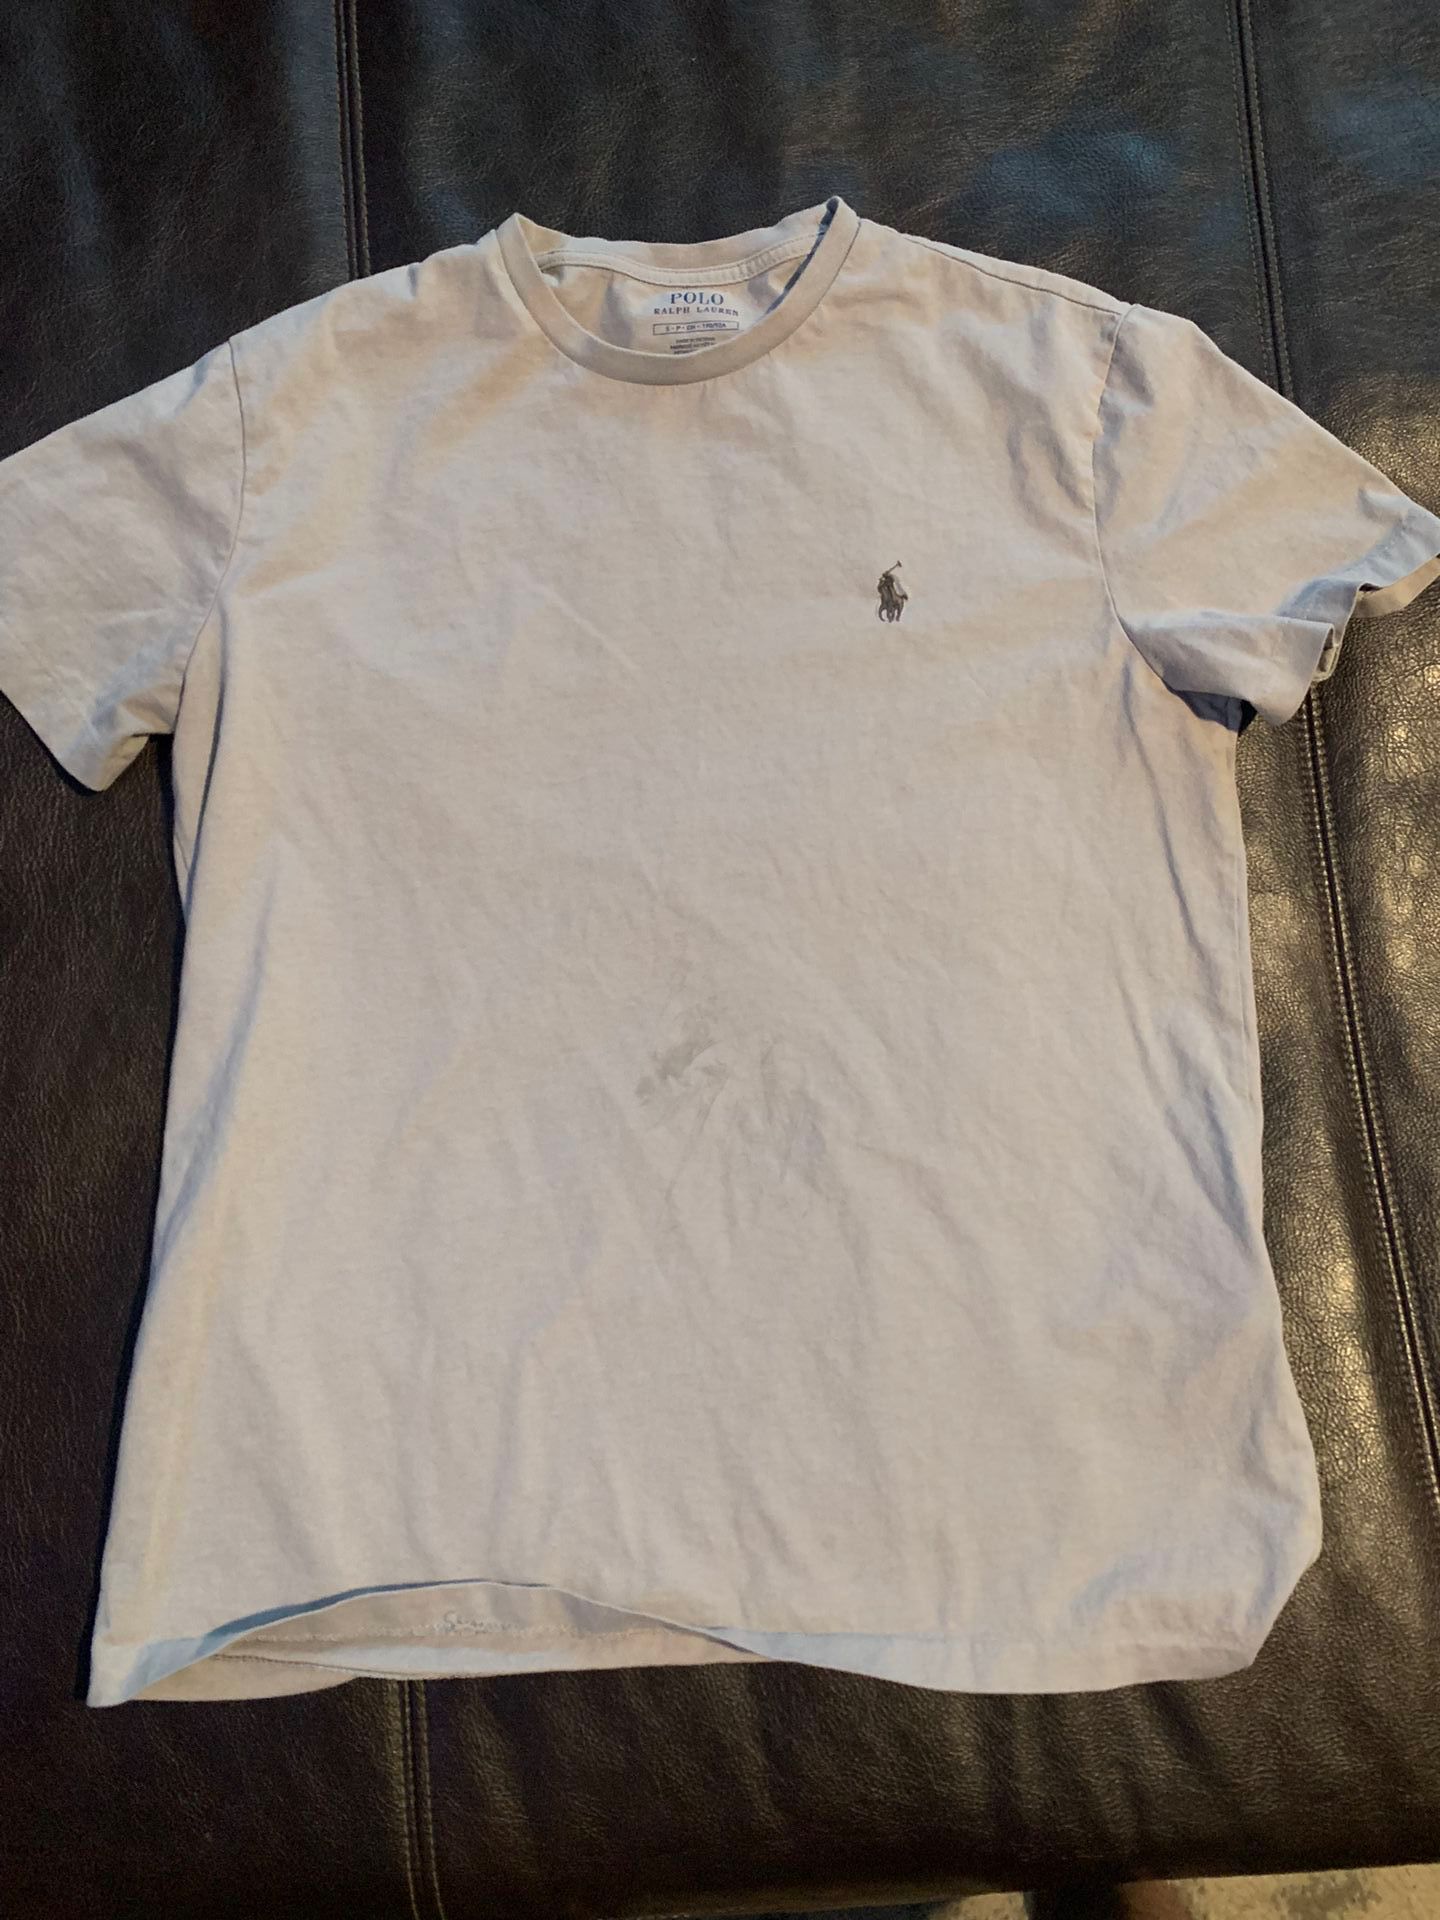 Polo Ralph Lauren T-Shirt Size Small